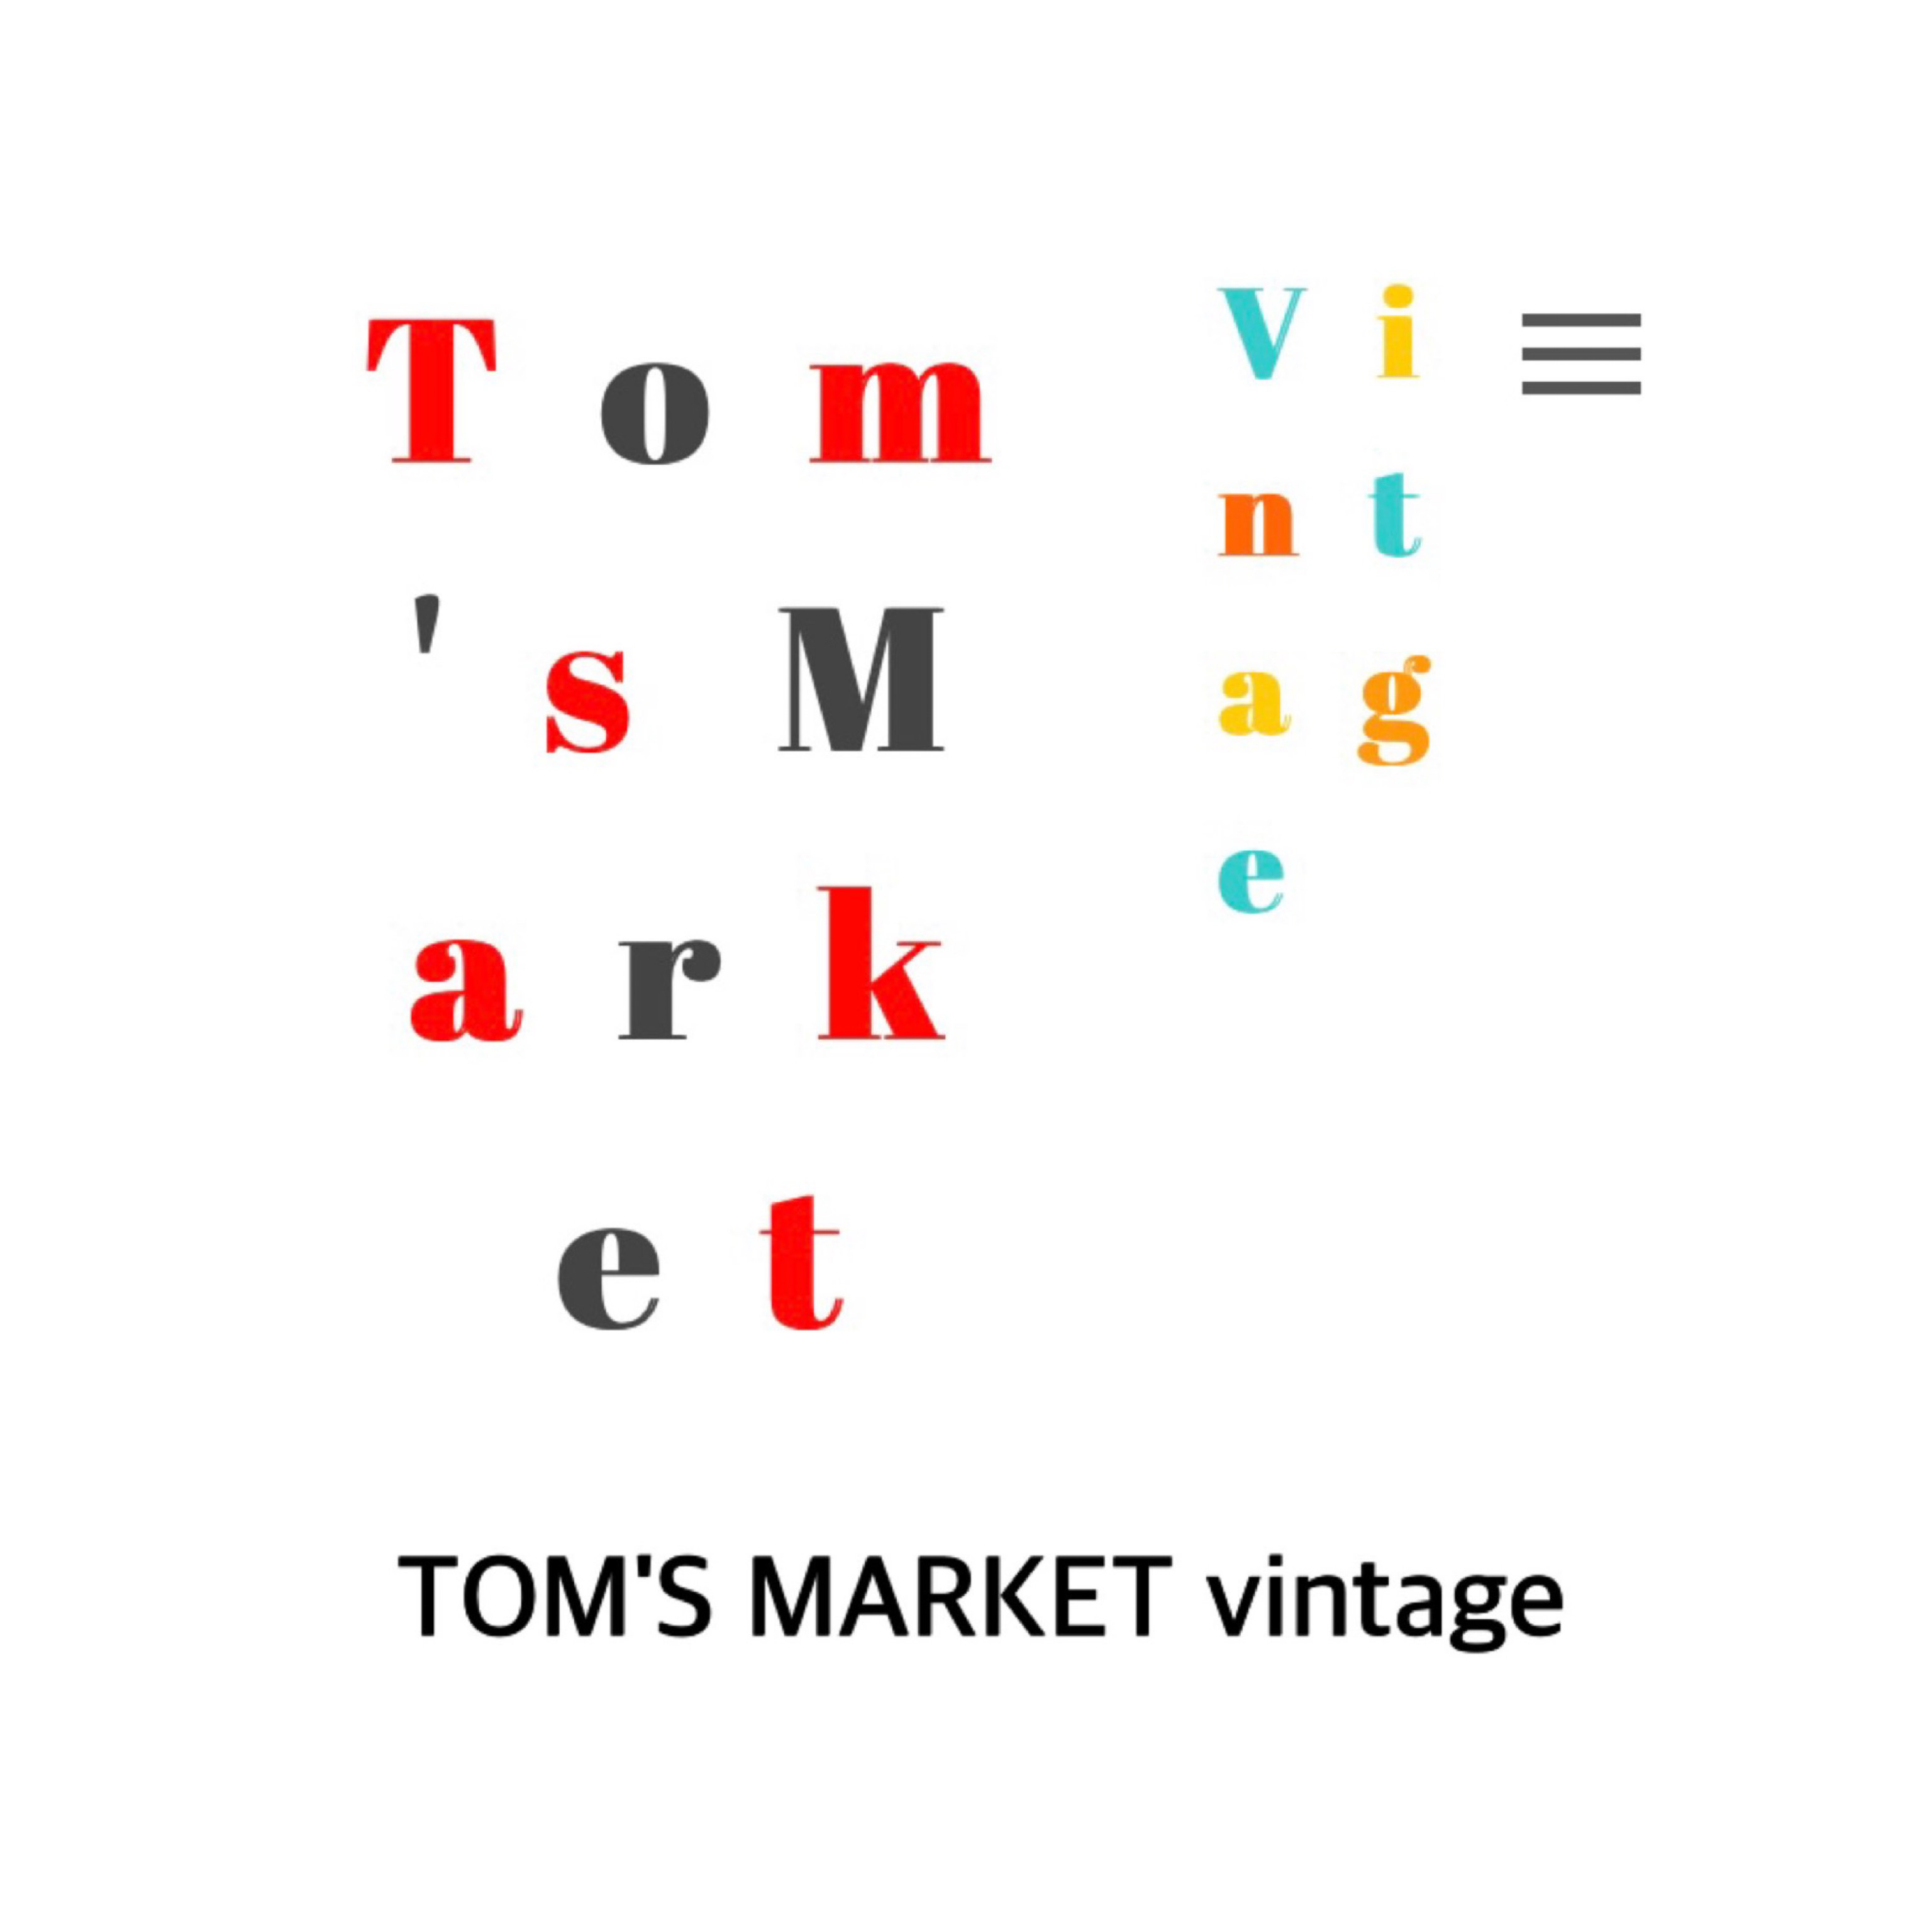 TOM'S MARKET vintage